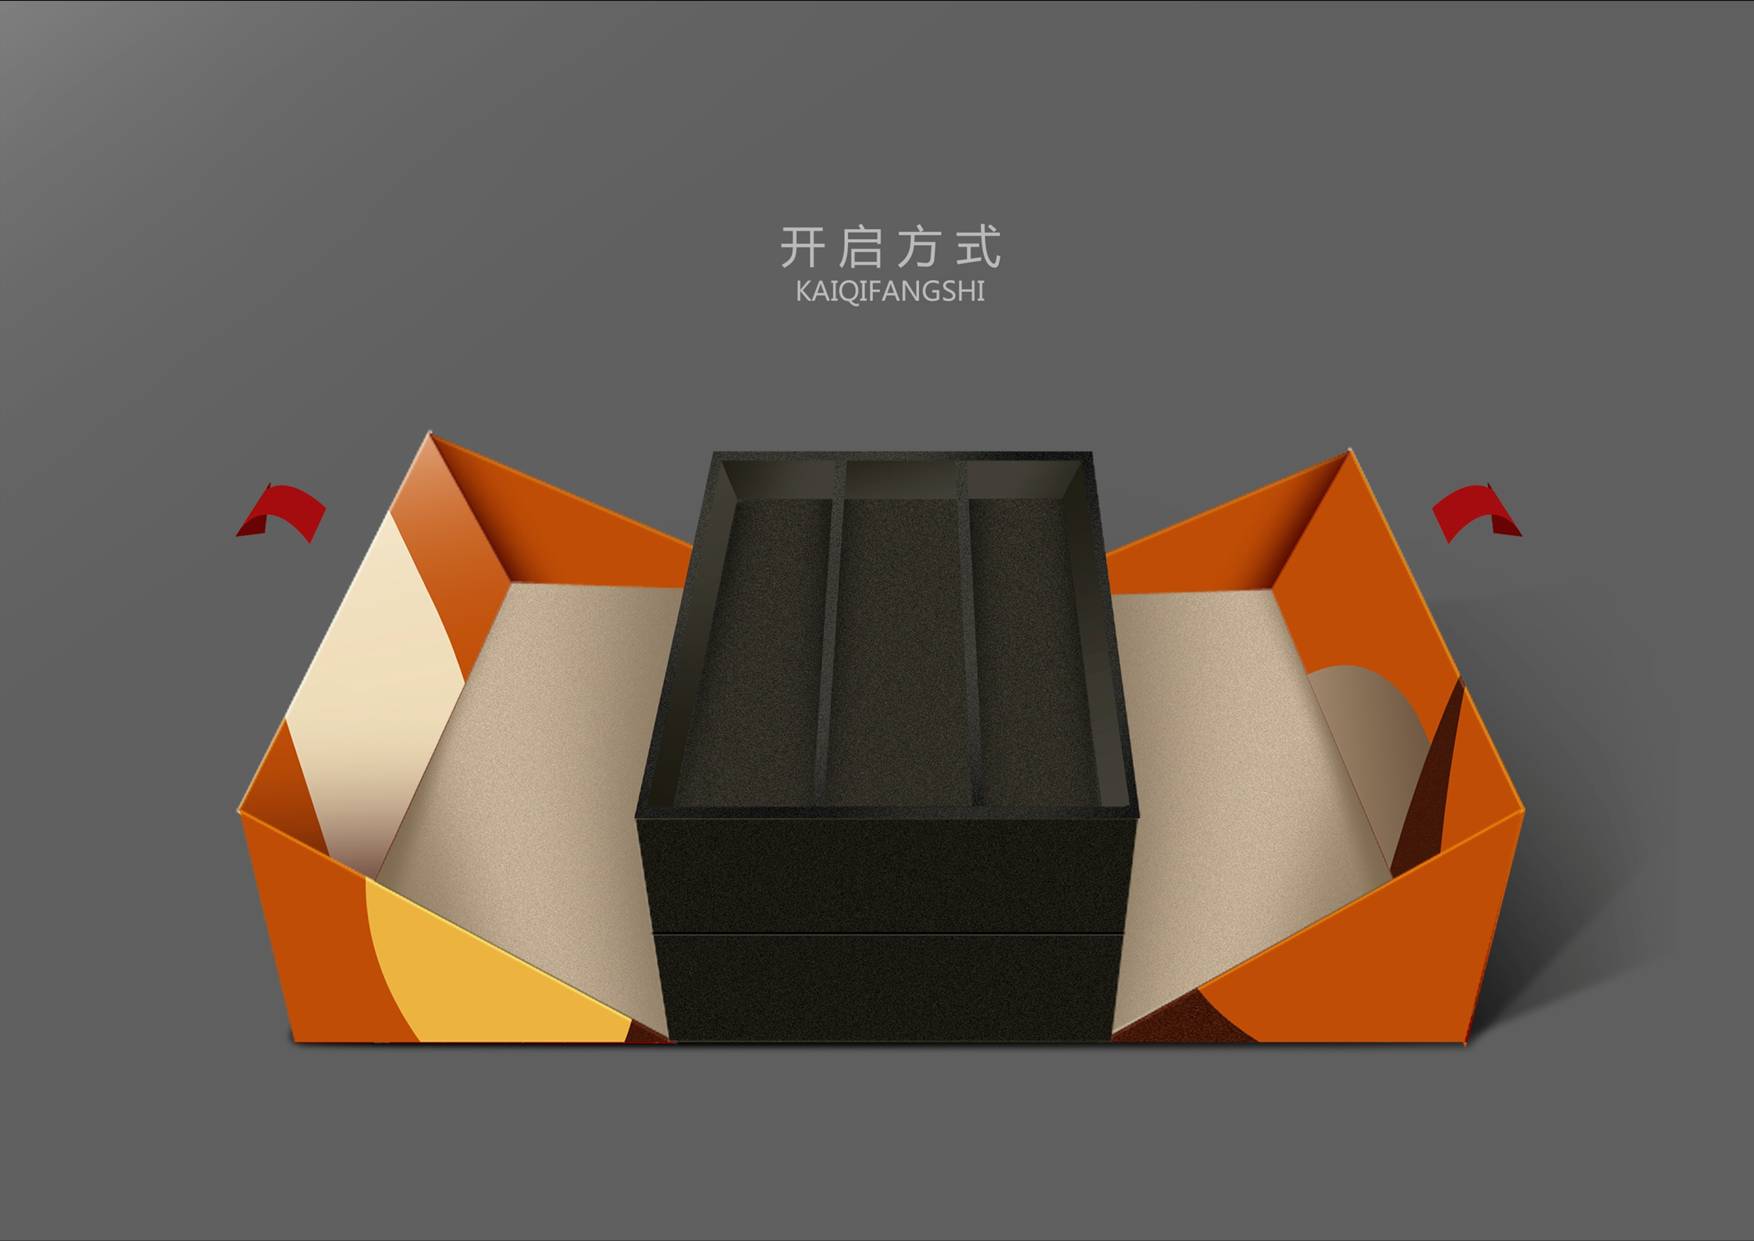 深圳专业红酒包装设计双支木盒设计深圳专业红酒包装设计双支木盒设计生产定制厂家